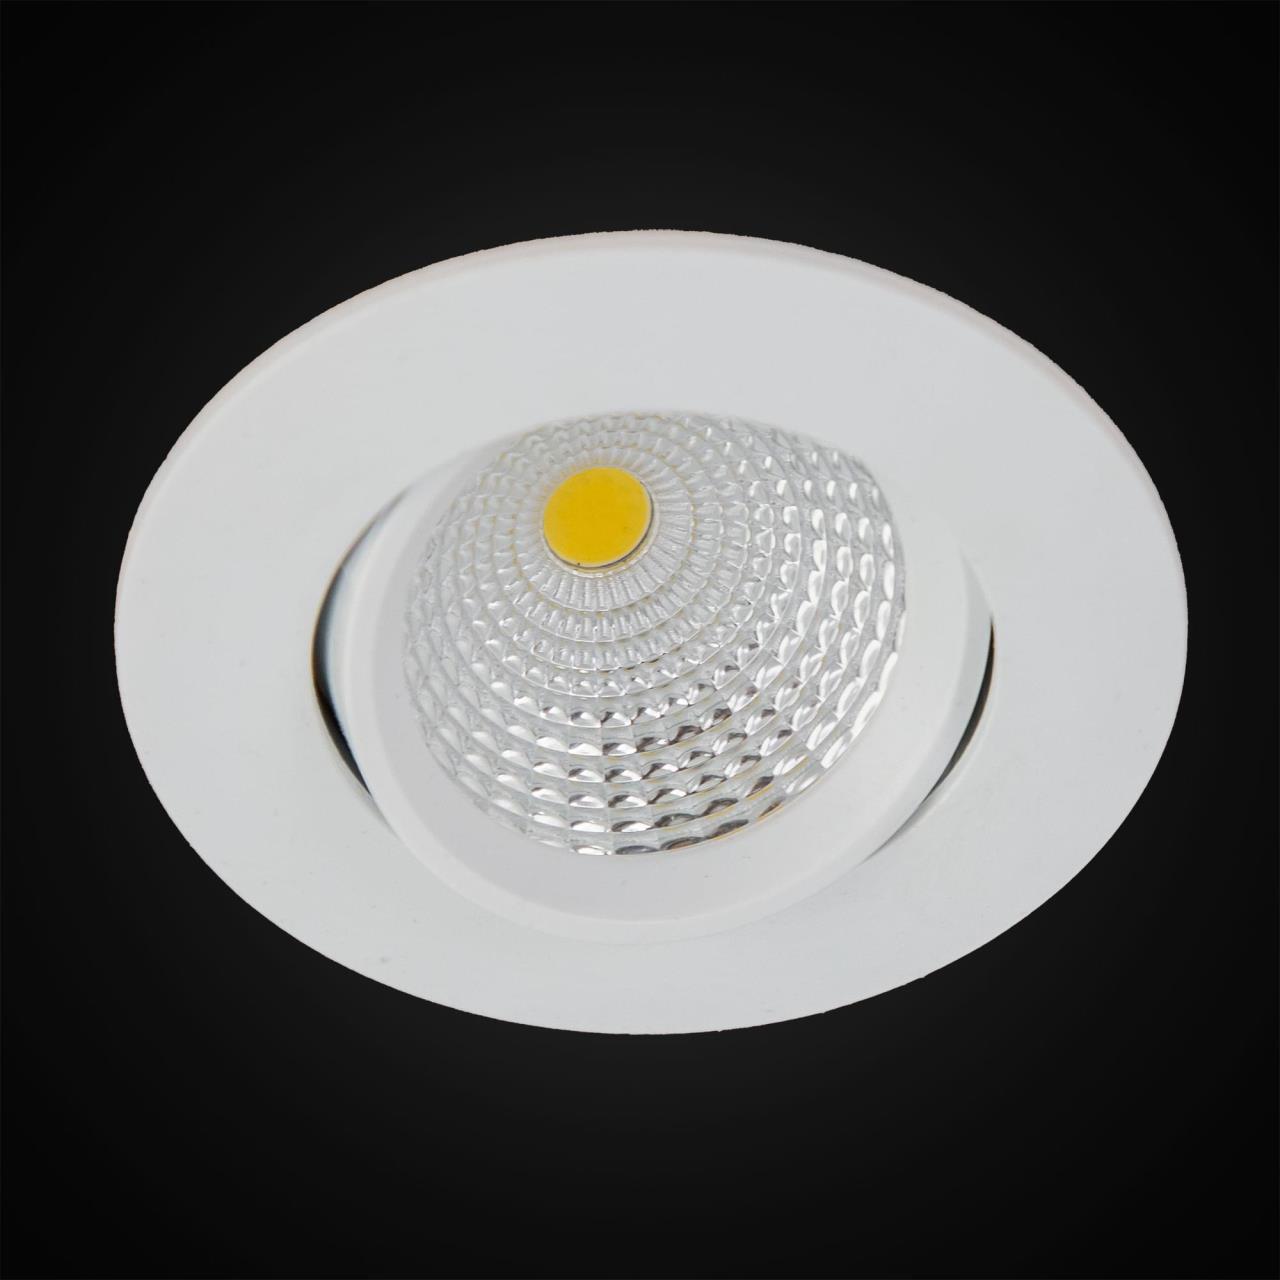 Встраиваемый светодиодный светильник Citilux Каппа CLD0057N